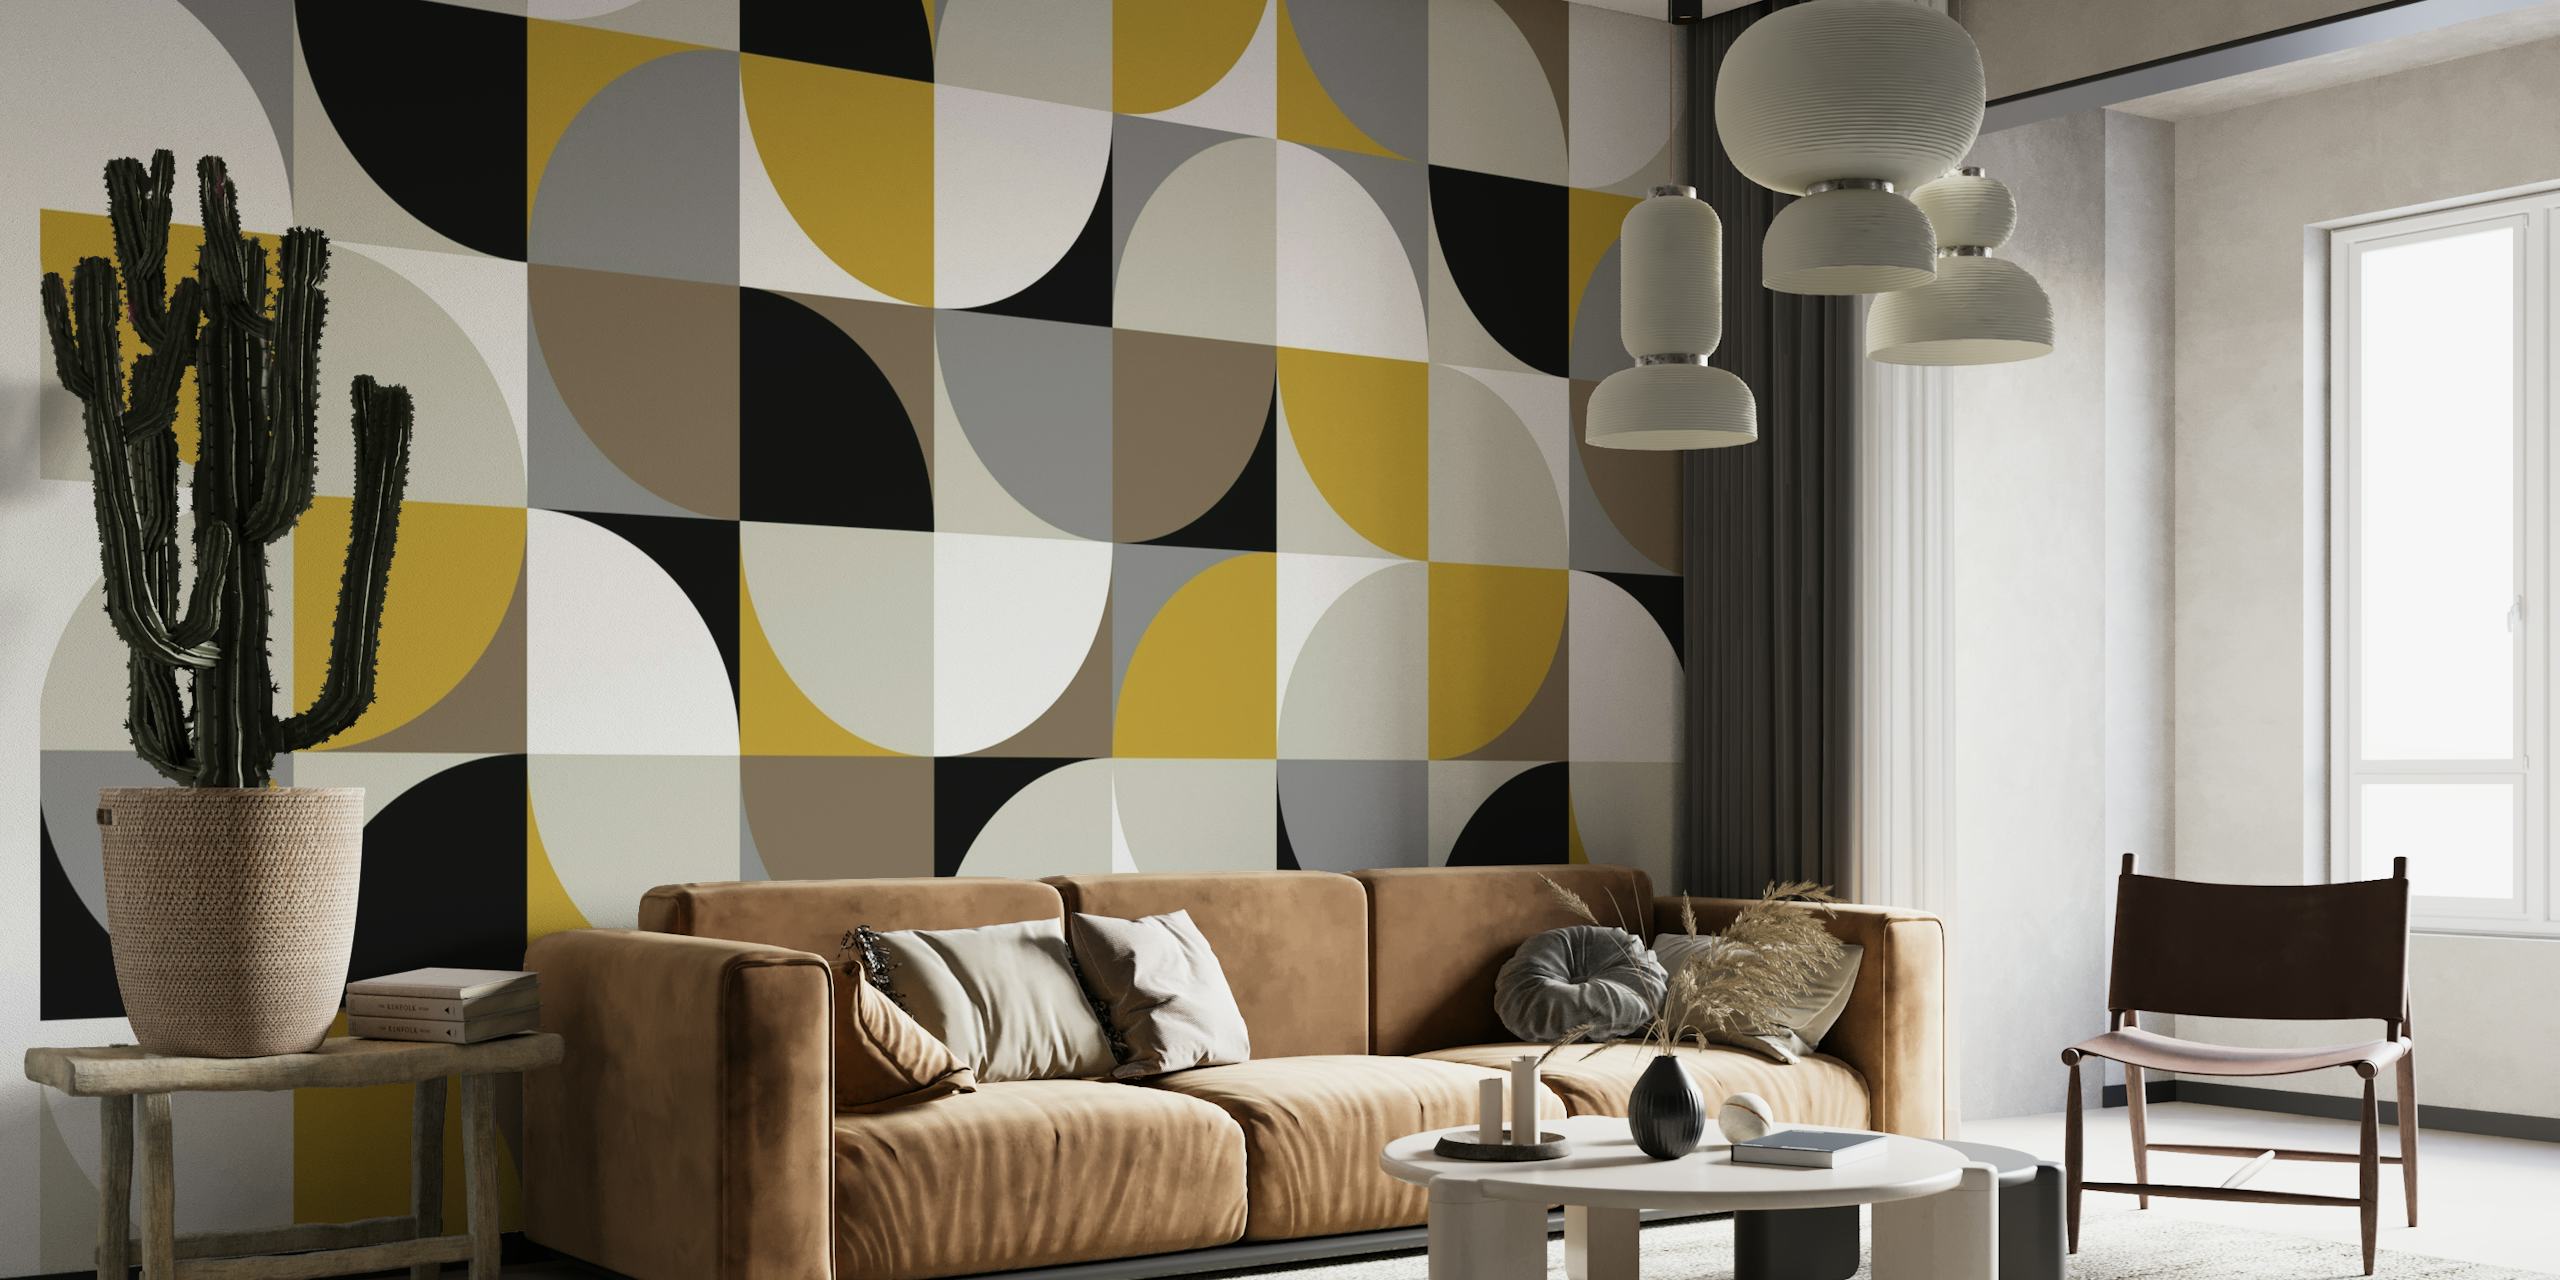 Dizajn retro modnih kvadrata u crnoj, bijeloj, sivoj i zlatnoj boji za zidne murale